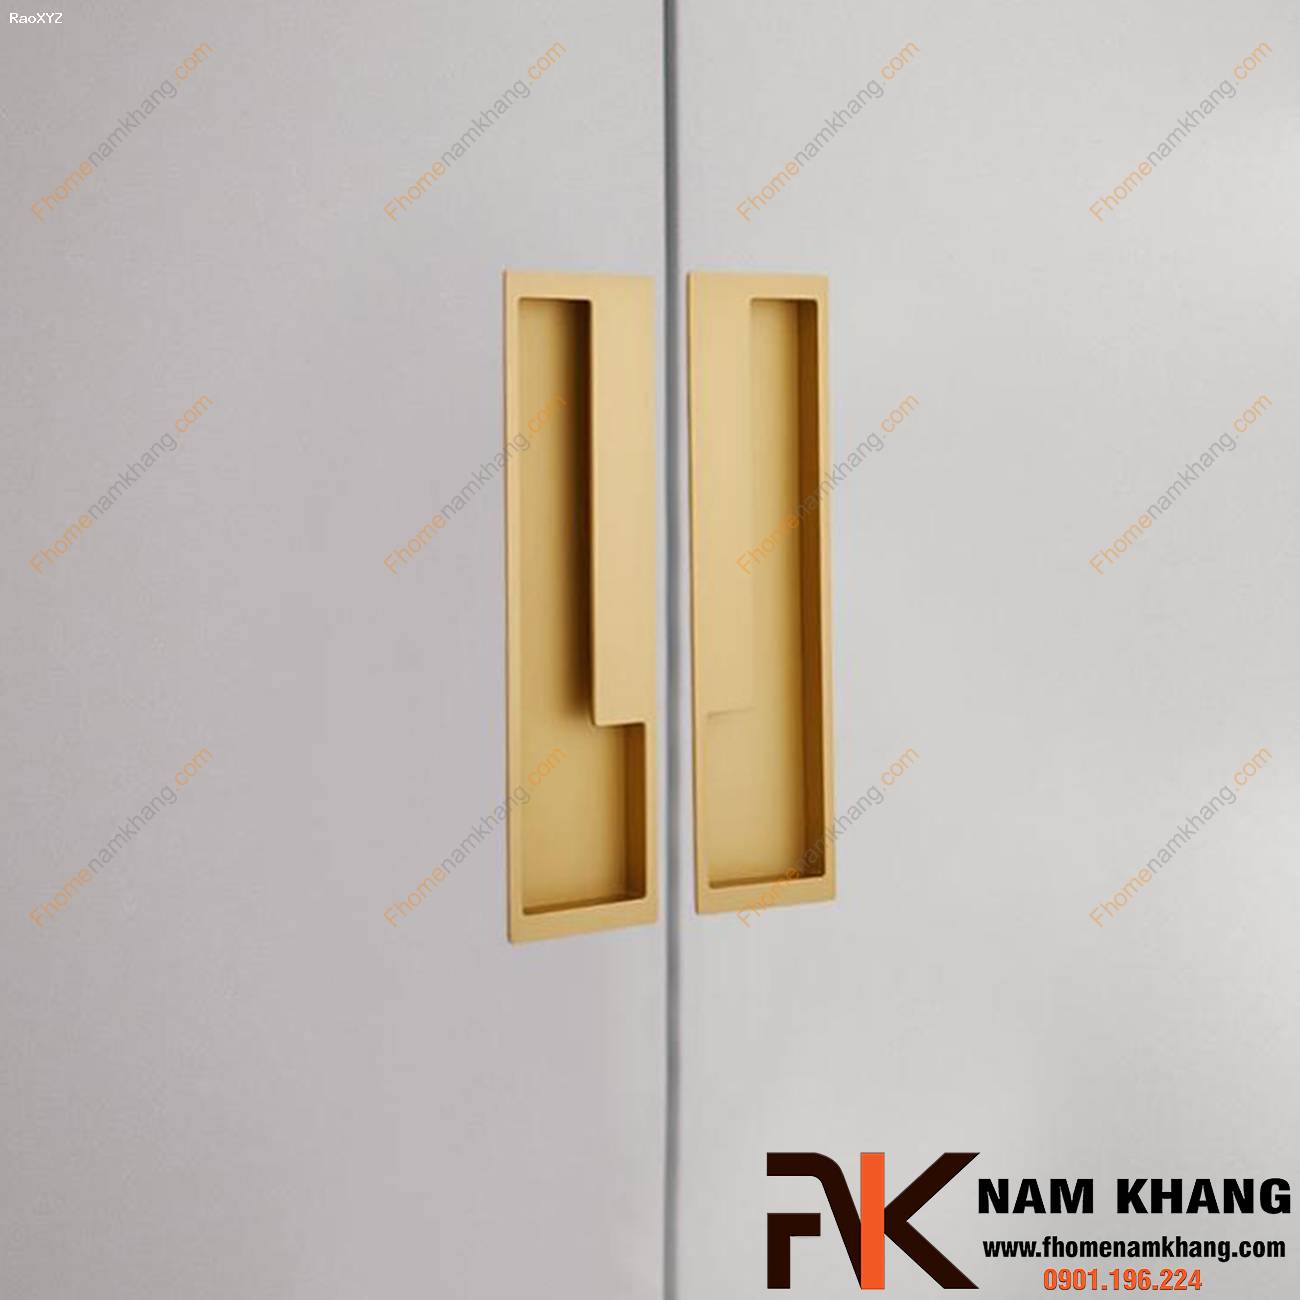 Tay nắm âm tủ hiện đại NK438 | F-Home NamKhang